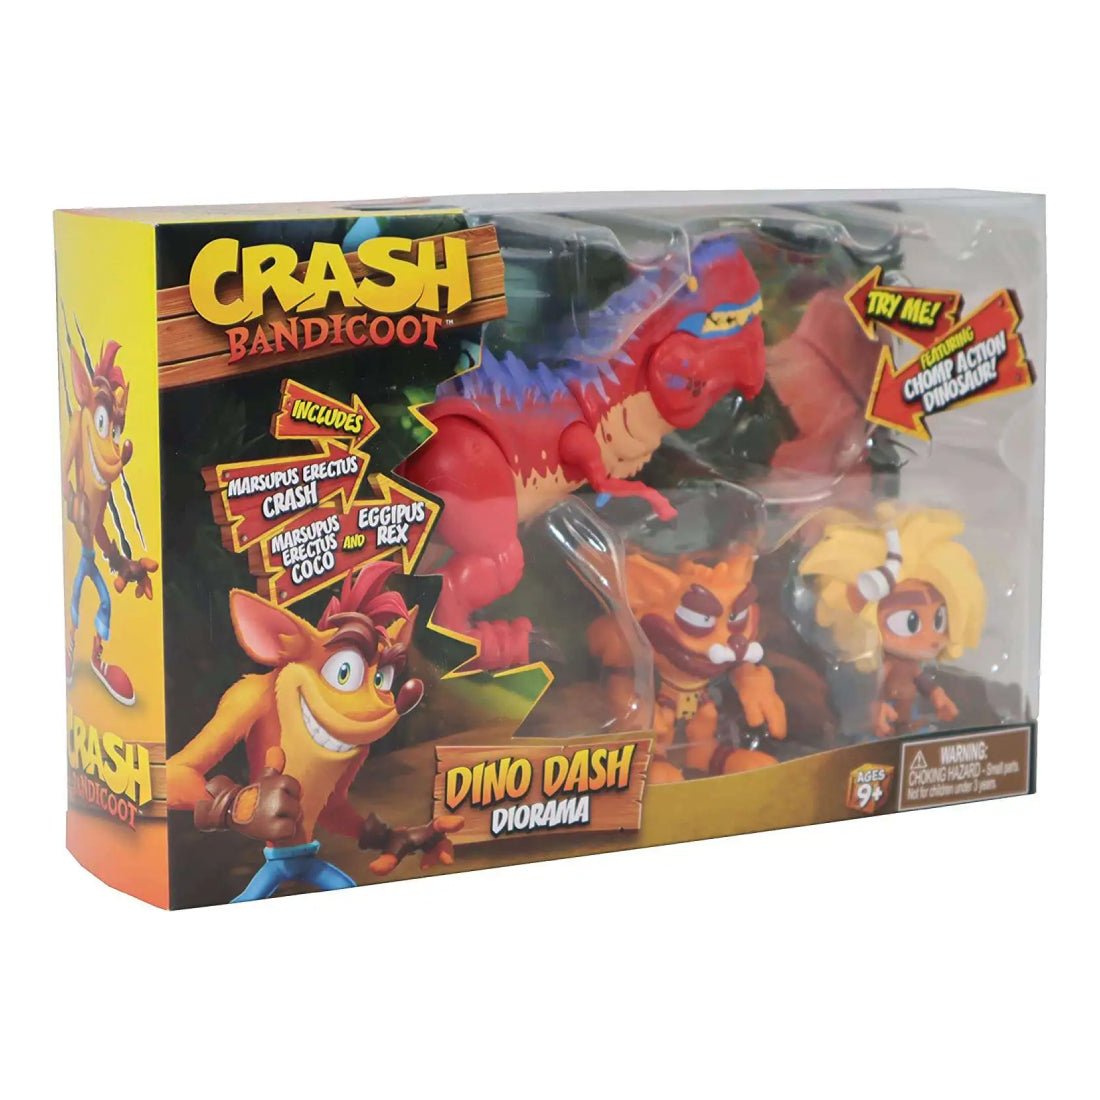 Bandai Crash Bandicoot 2.5” Deluxe Diorama - لعبة - Store 974 | ستور ٩٧٤